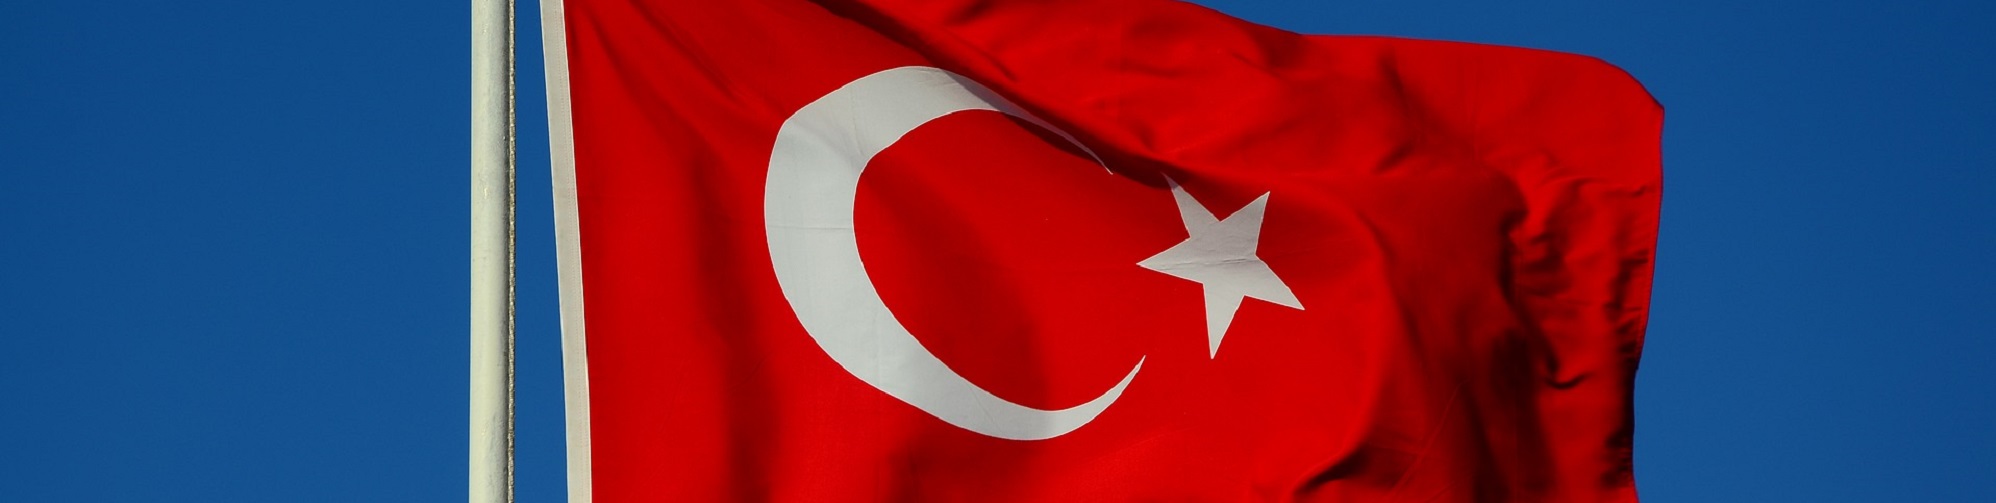 Strumenti e rischi sottostanti per chi “punta” sulla Turchia